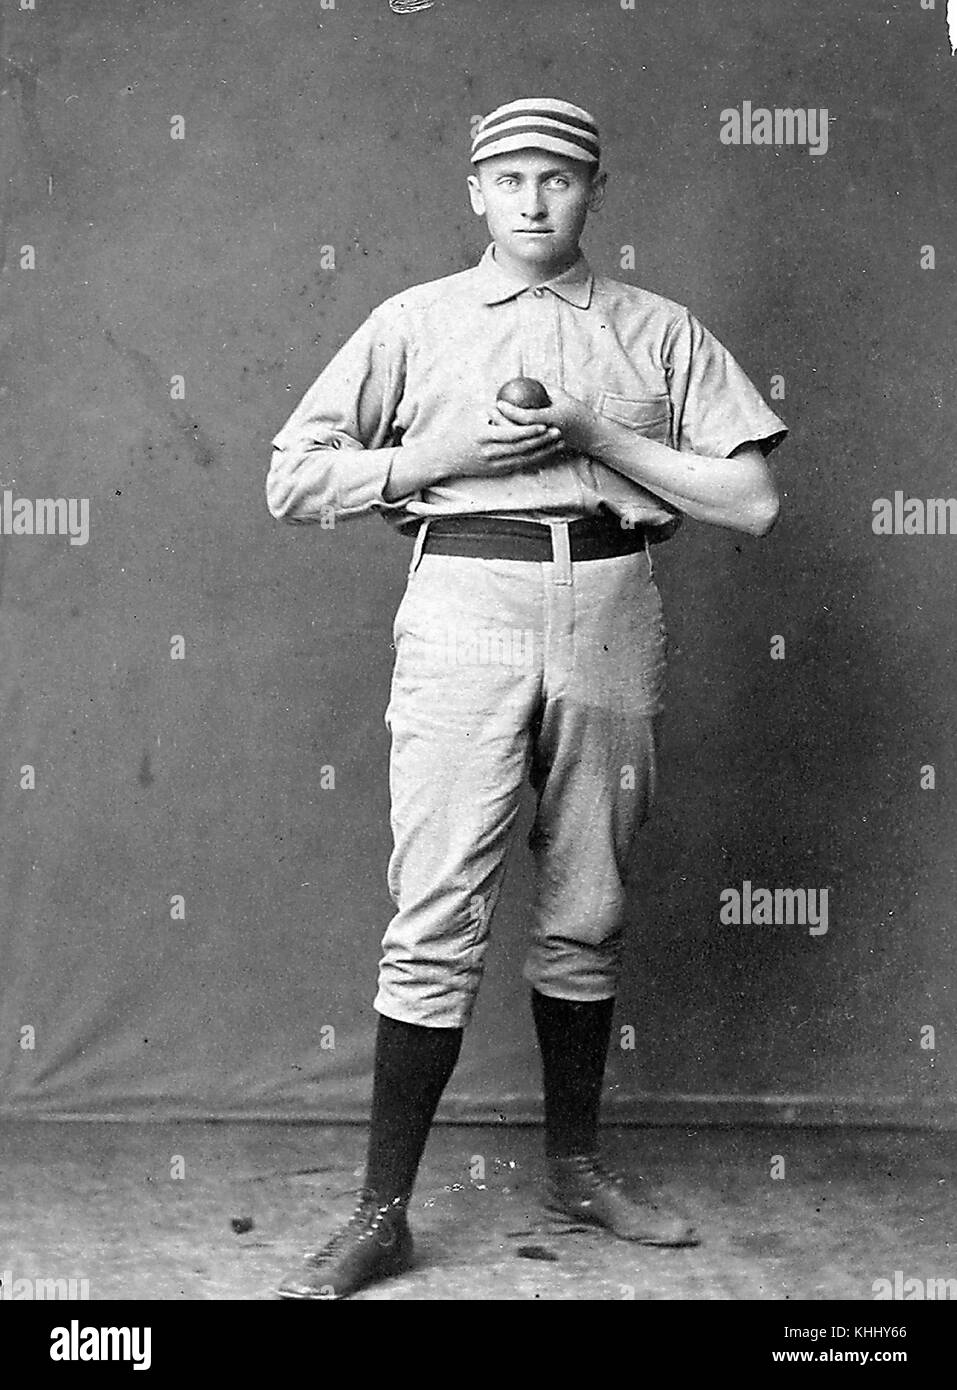 Portrait de Dan Casey, qui a joué dans la Ligue majeure de baseball principalement comme lanceur, sur une partie de sept saisons pour quatre clubs de ligue majeure, principalement les Quakers de Philadelphie, en uniforme, tenue d'une balle, photographie de GE Gray, Boston, Massachussets, 1900. De la bibliothèque publique de New York. Banque D'Images